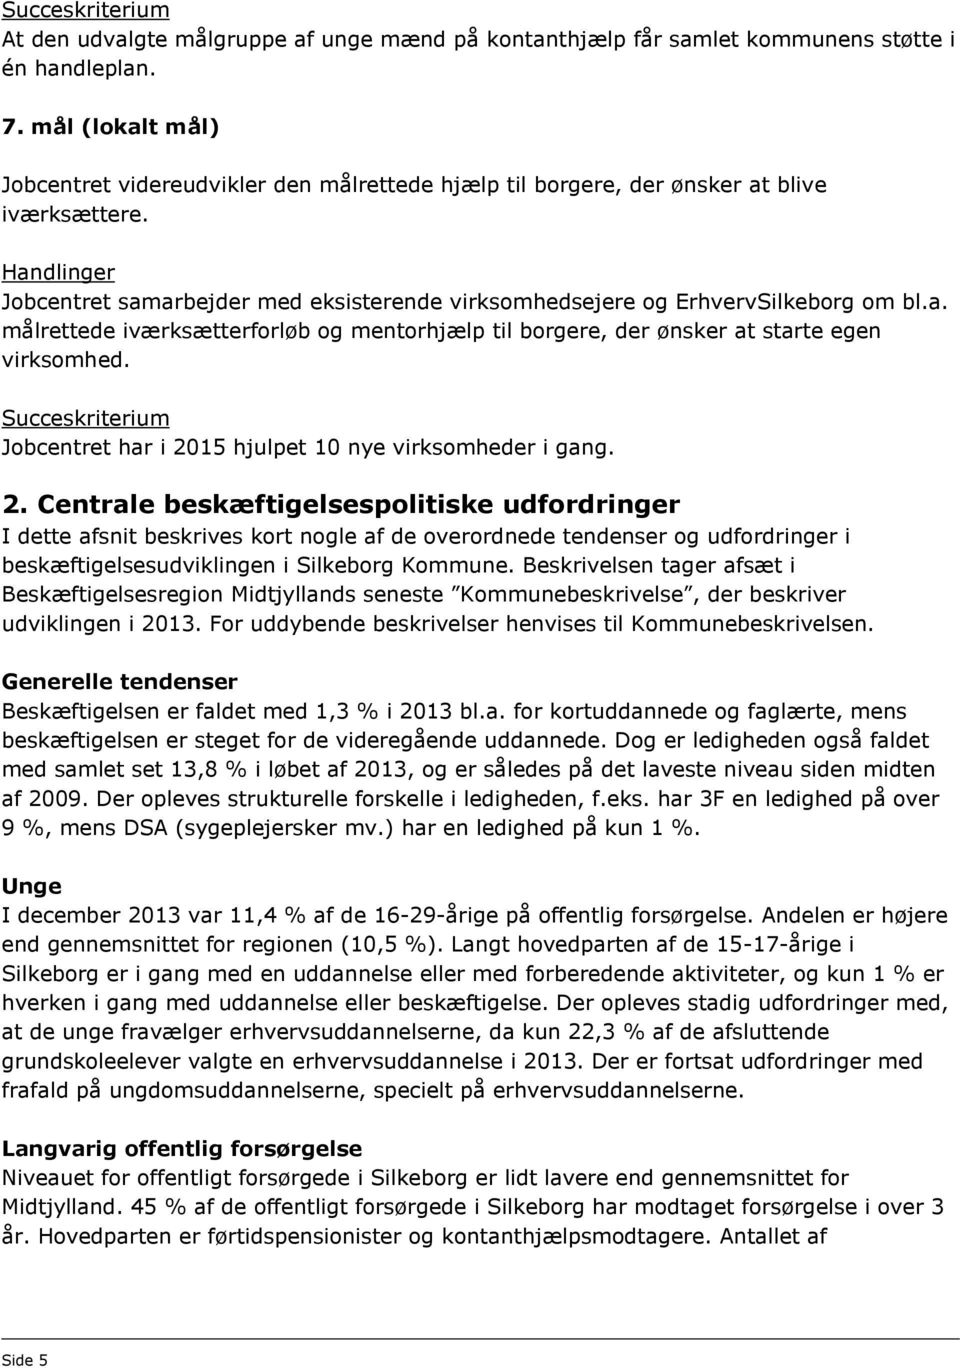 Jobcentret har i 2015 hjulpet 10 nye virksomheder i gang. 2. Centrale beskæftigelsespolitiske udfordringer I dette afsnit beskrives kort nogle af de overordnede tendenser og udfordringer i beskæftigelsesudviklingen i Silkeborg Kommune.